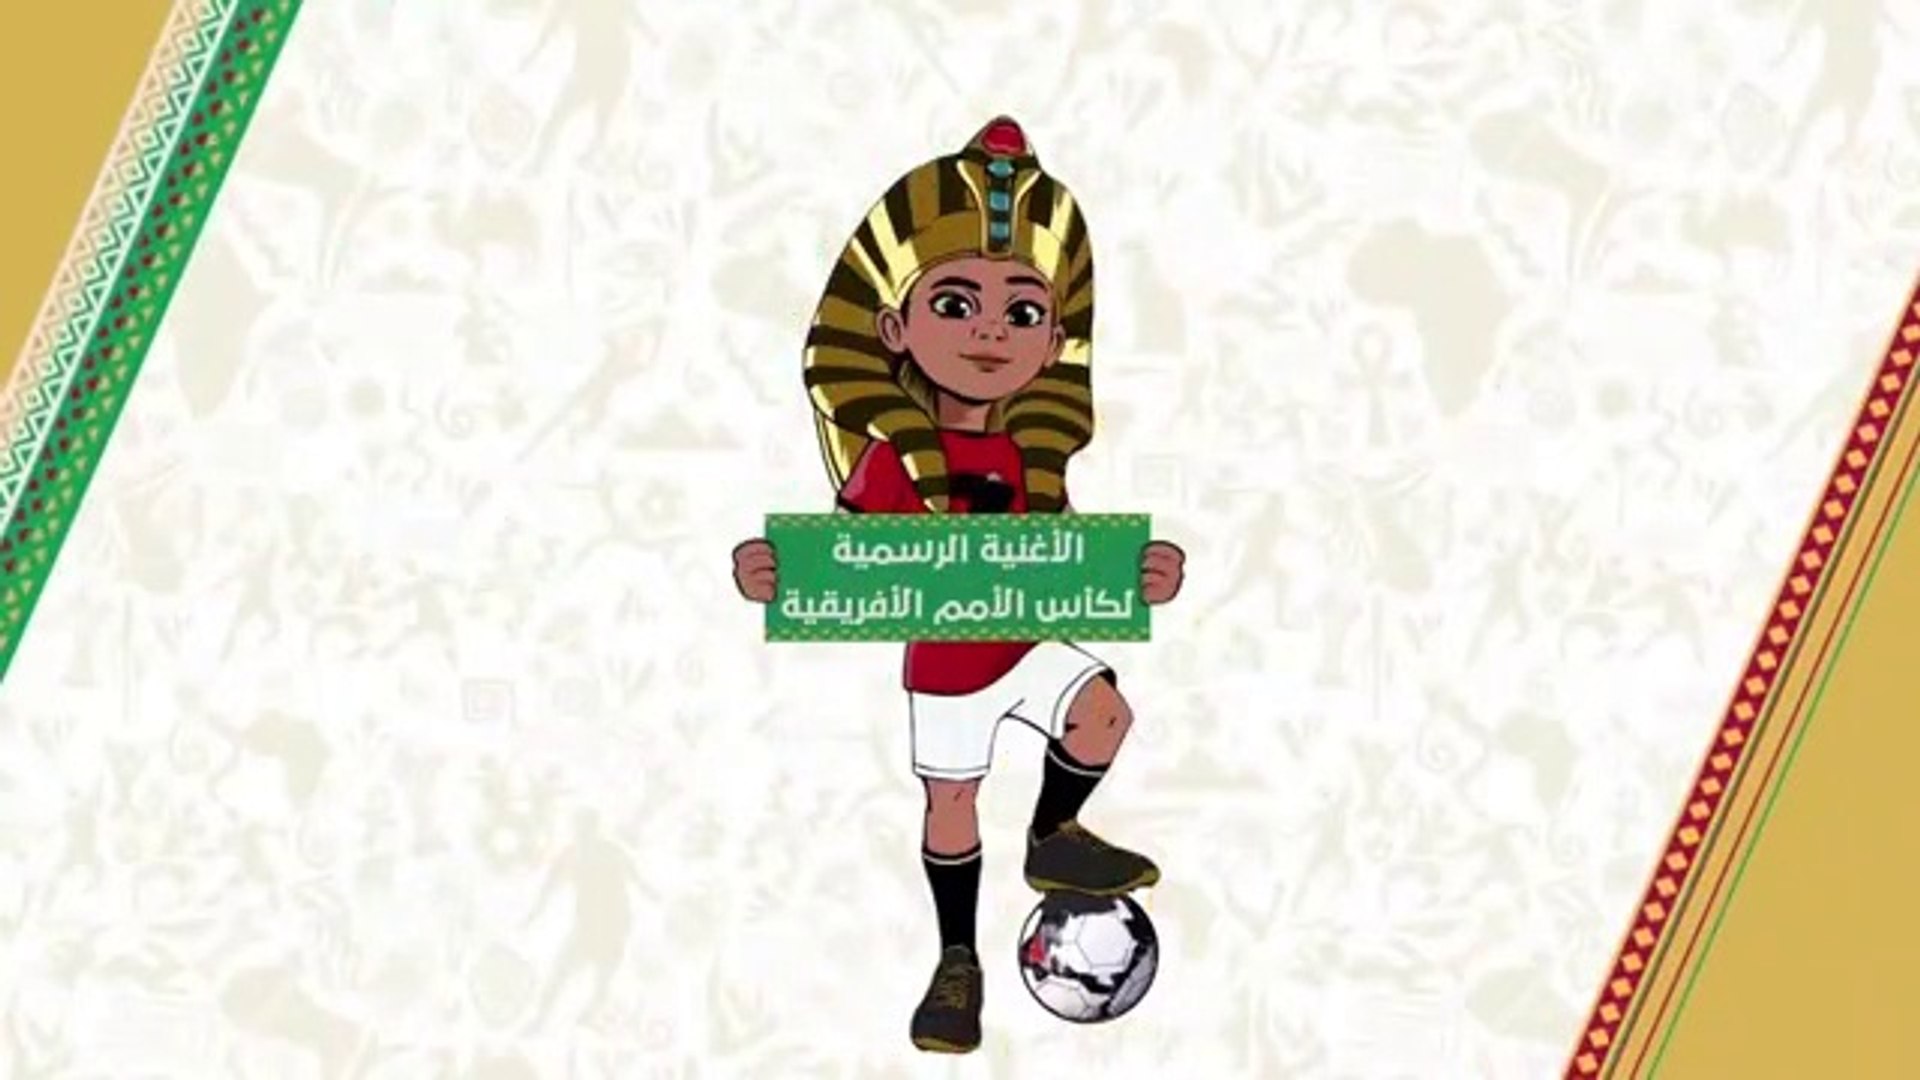 Chanson can 2019 Egypt الأغنية الرسمية لكأس الأمم الإفريقية 2019 بمصر -  Vidéo Dailymotion